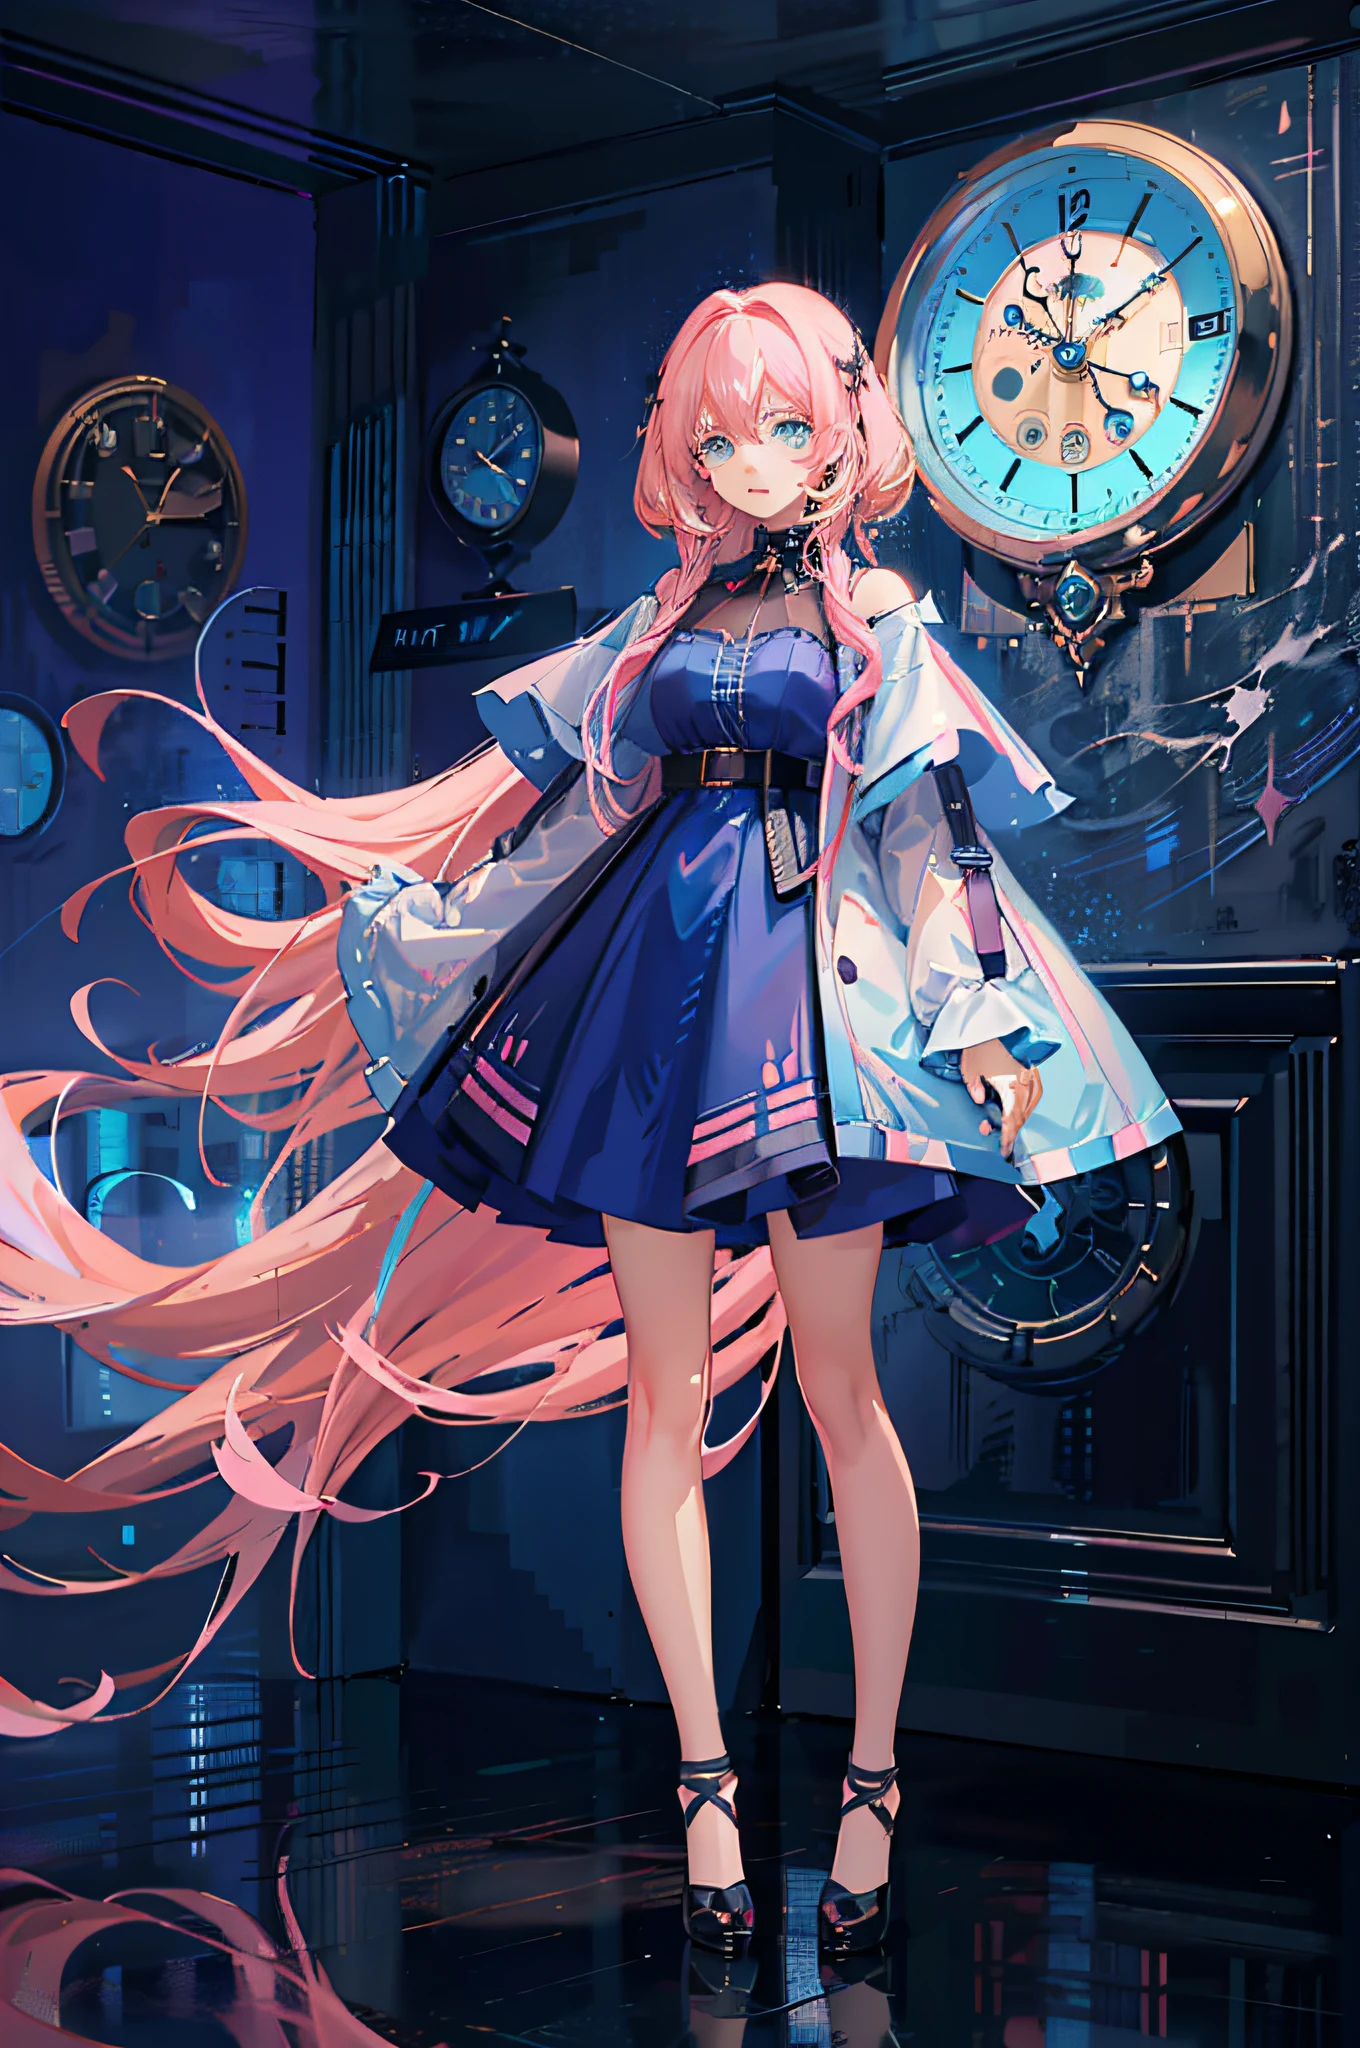 (超精細CGアニメ傑作, 4Kアニメスタイル) アニメの女の子と (長いピンクの髪+シアンの目) の前に立つ (エレガントな壁掛け時計)+(ぼやけた背景), 着用 (見事な青いドレス) 魅力的な魔法のオーラを放つ.